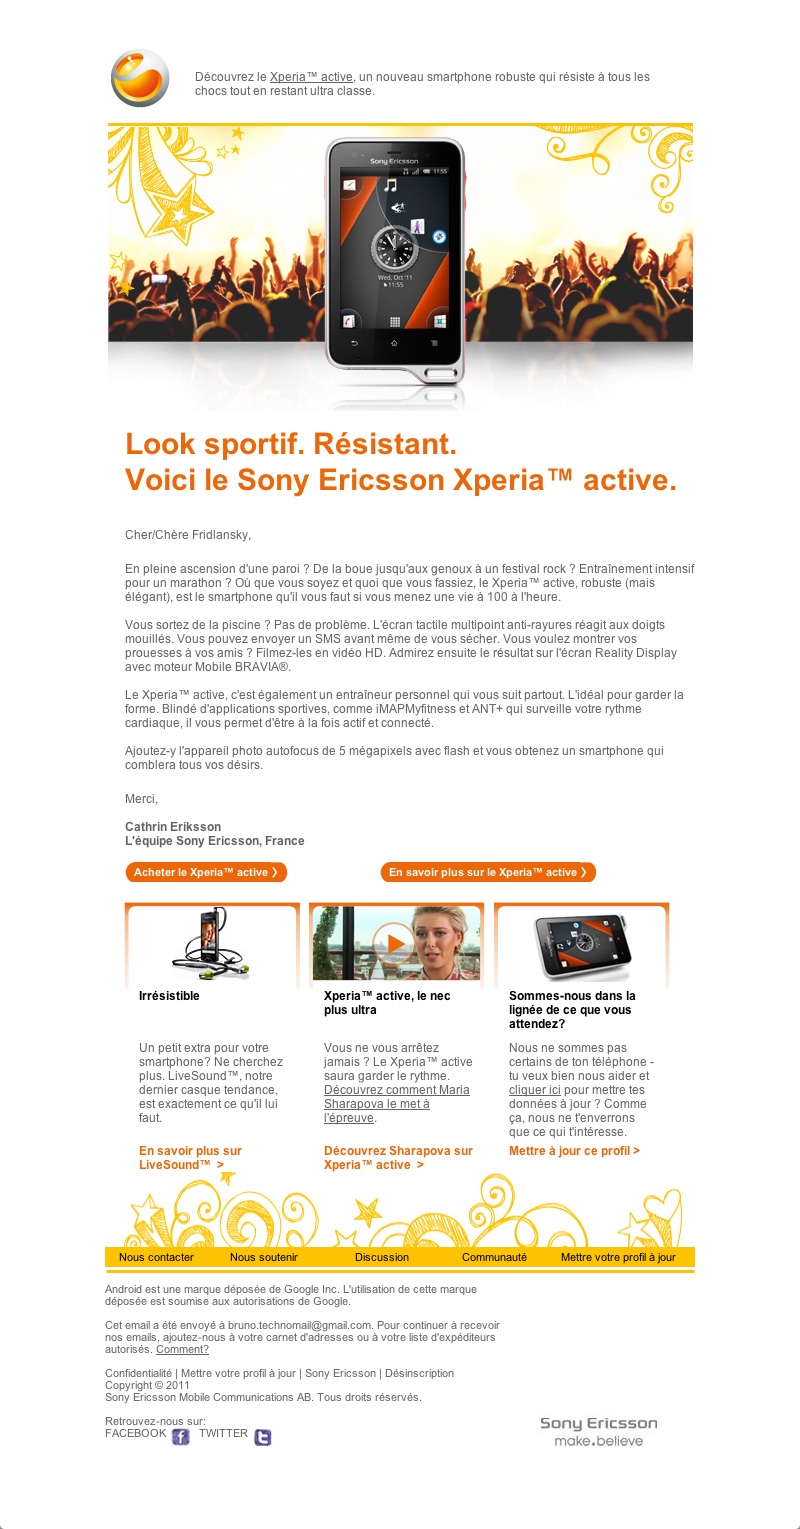 Sony Ericsson - Découvrez le Xperia active (20111026)